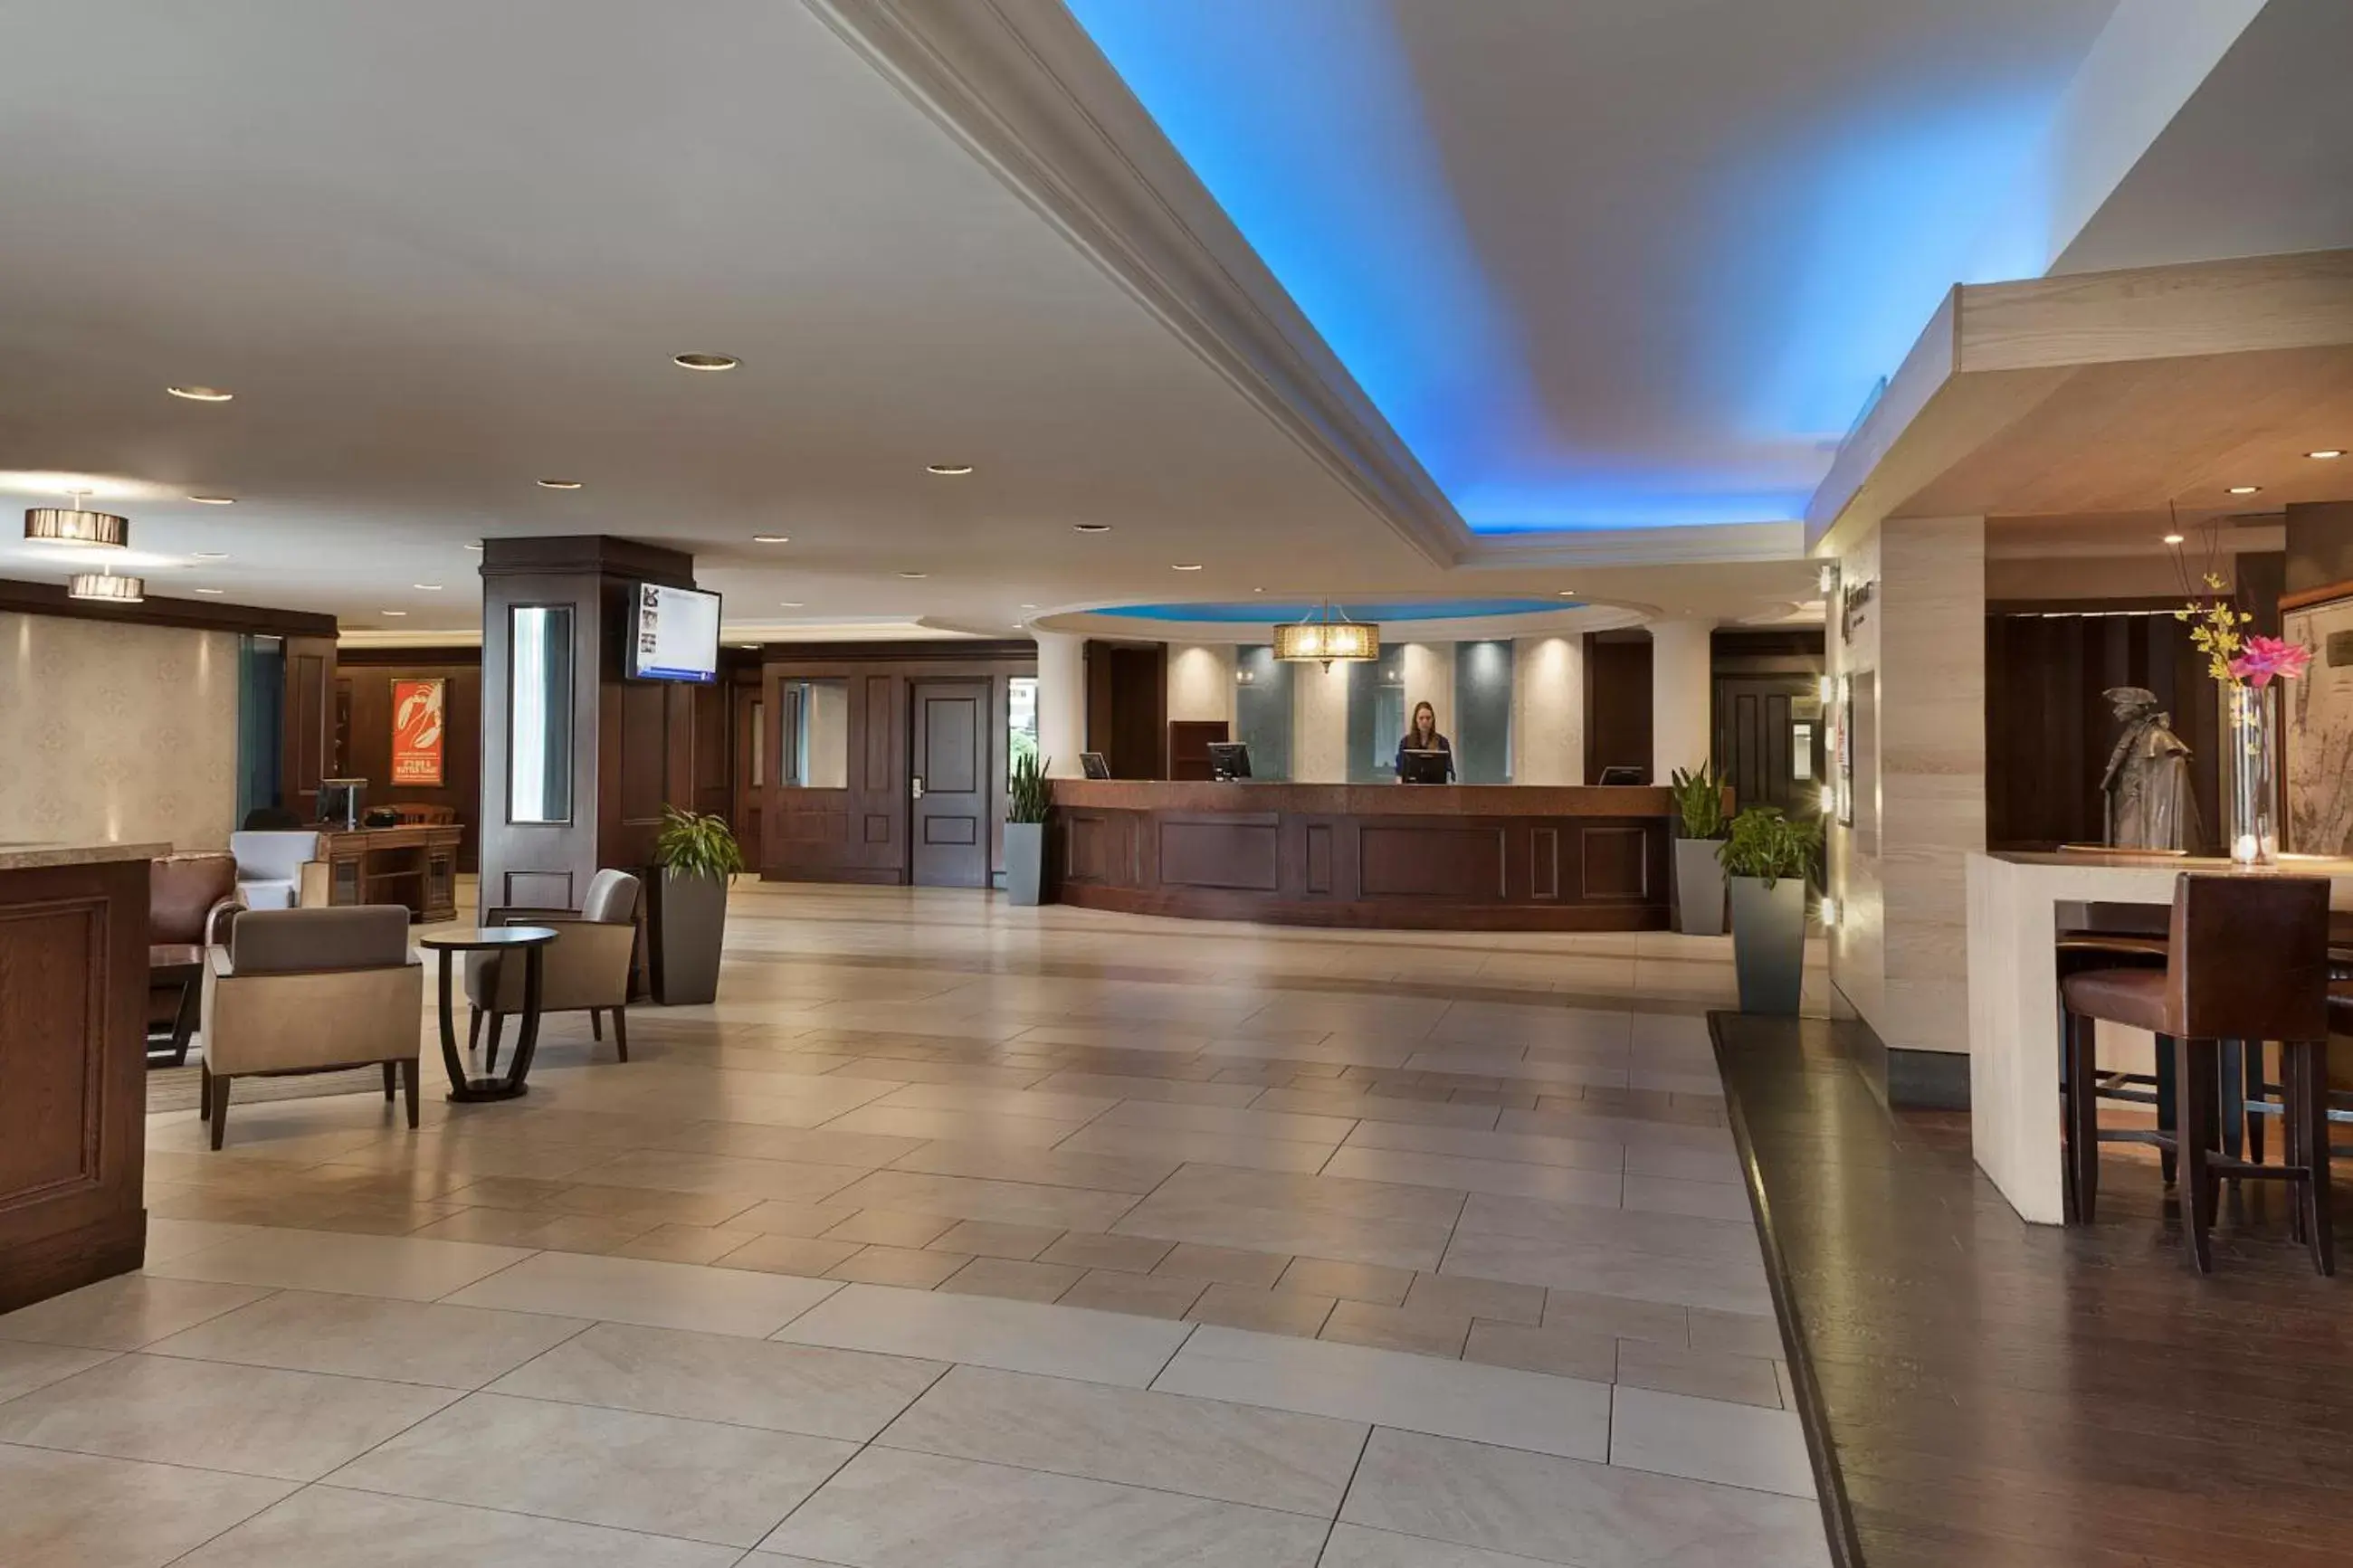 Lobby or reception, Lobby/Reception in Hotel Halifax